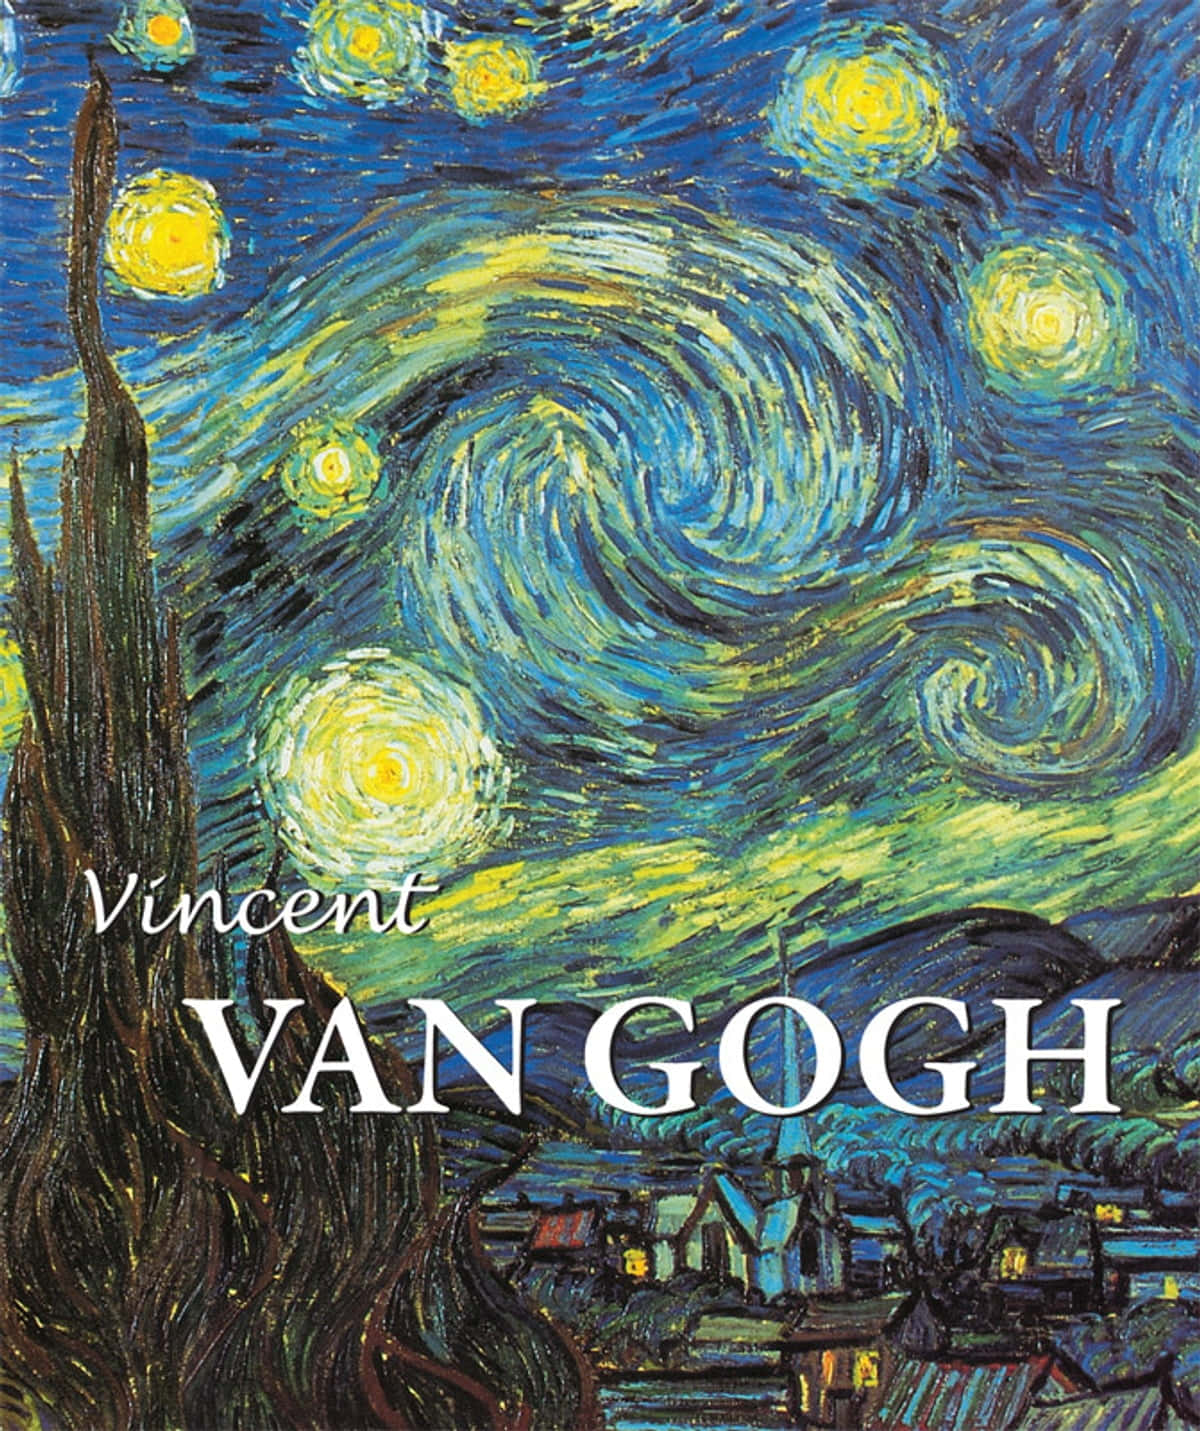 Lasamapolas De Vincent Van Gogh.